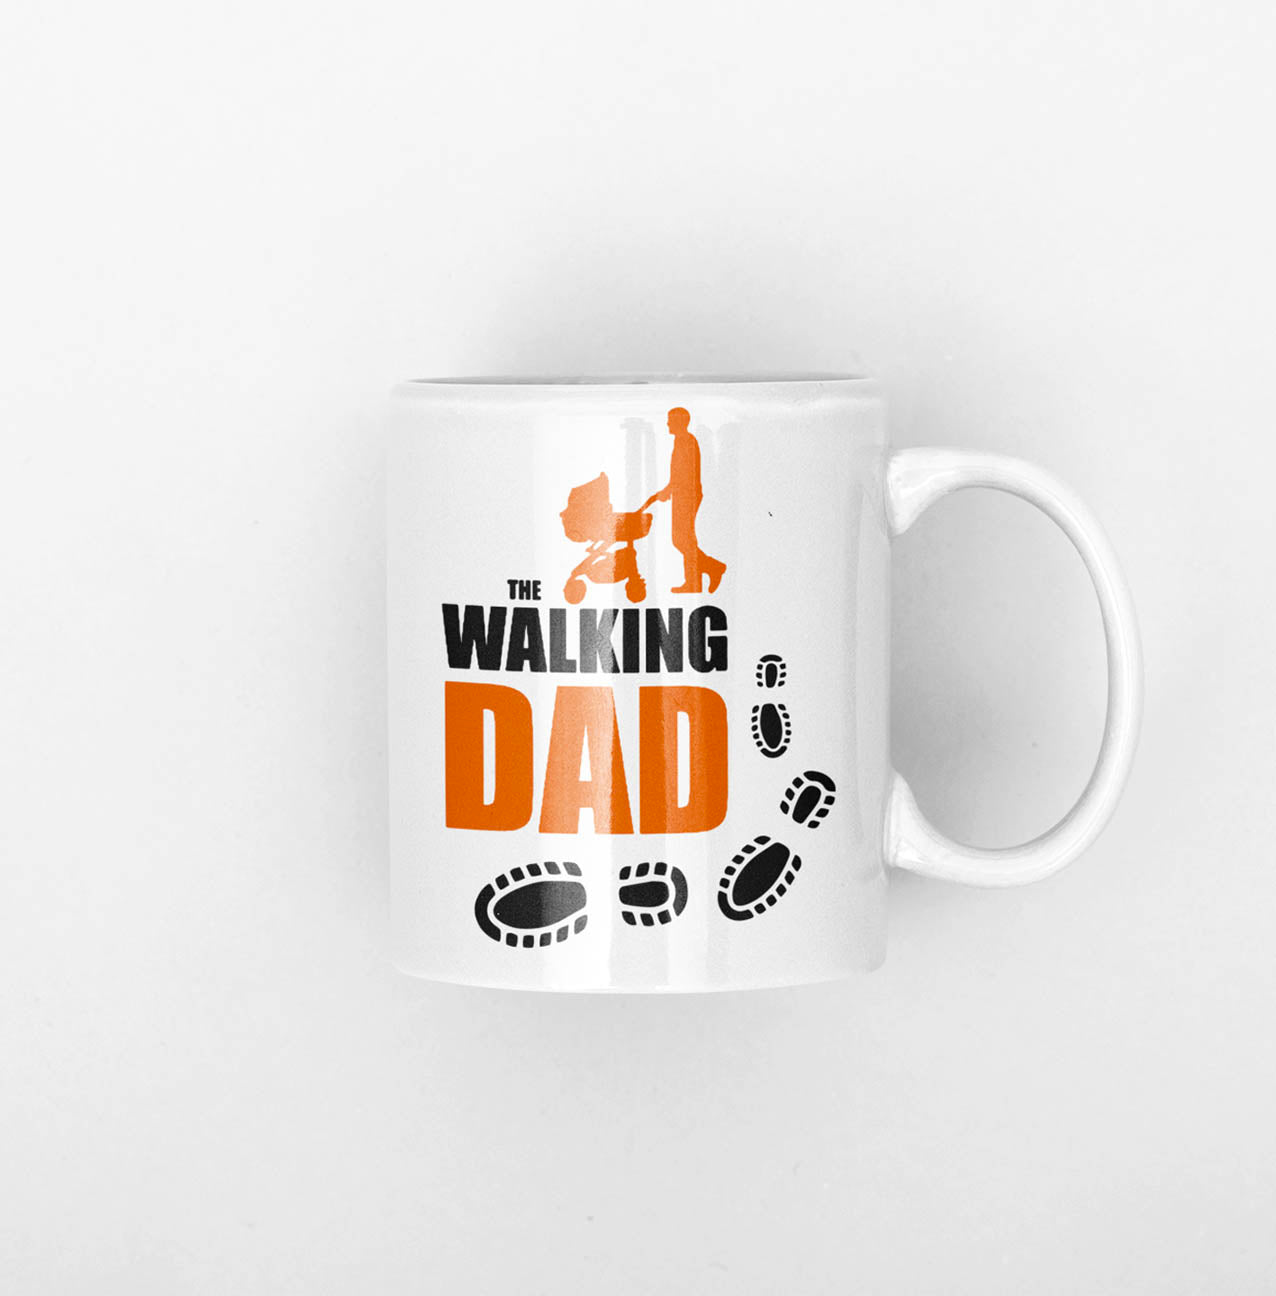 Dad Mug "The waliking Dad" 